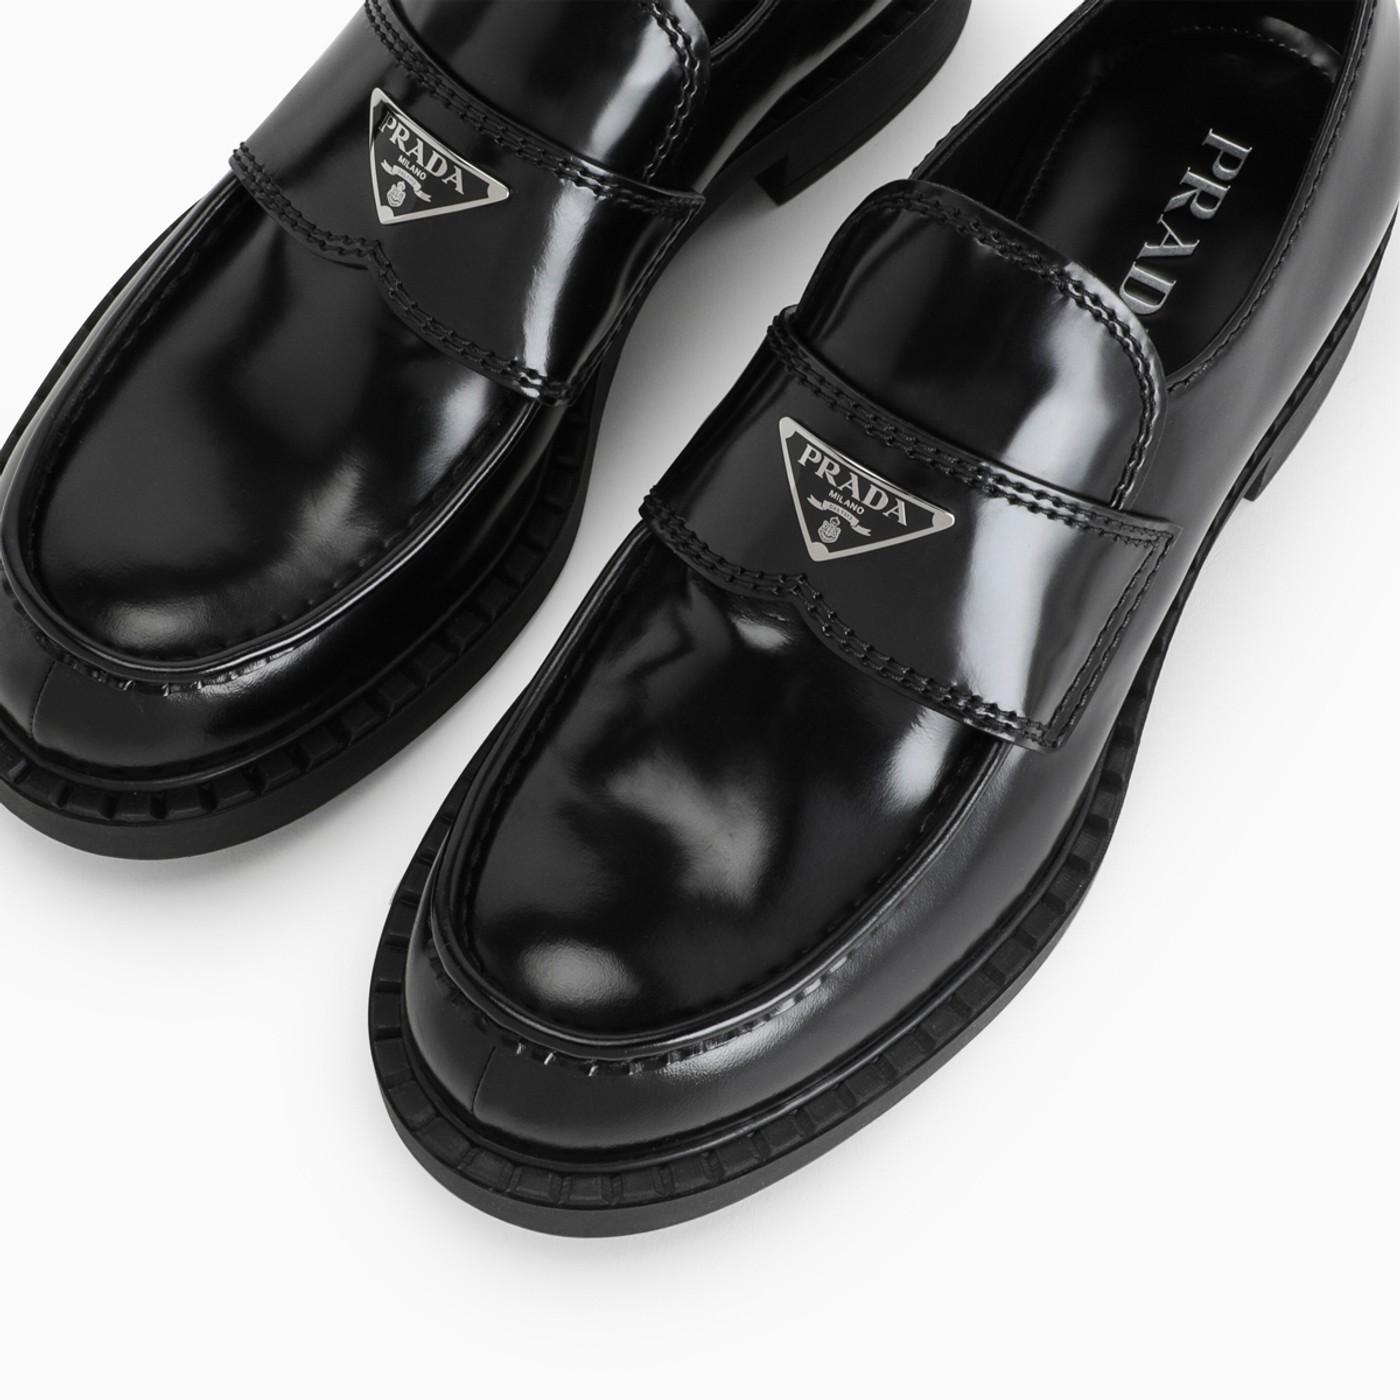 Prada Brushed Leather Loafer in Black for Men - Lyst